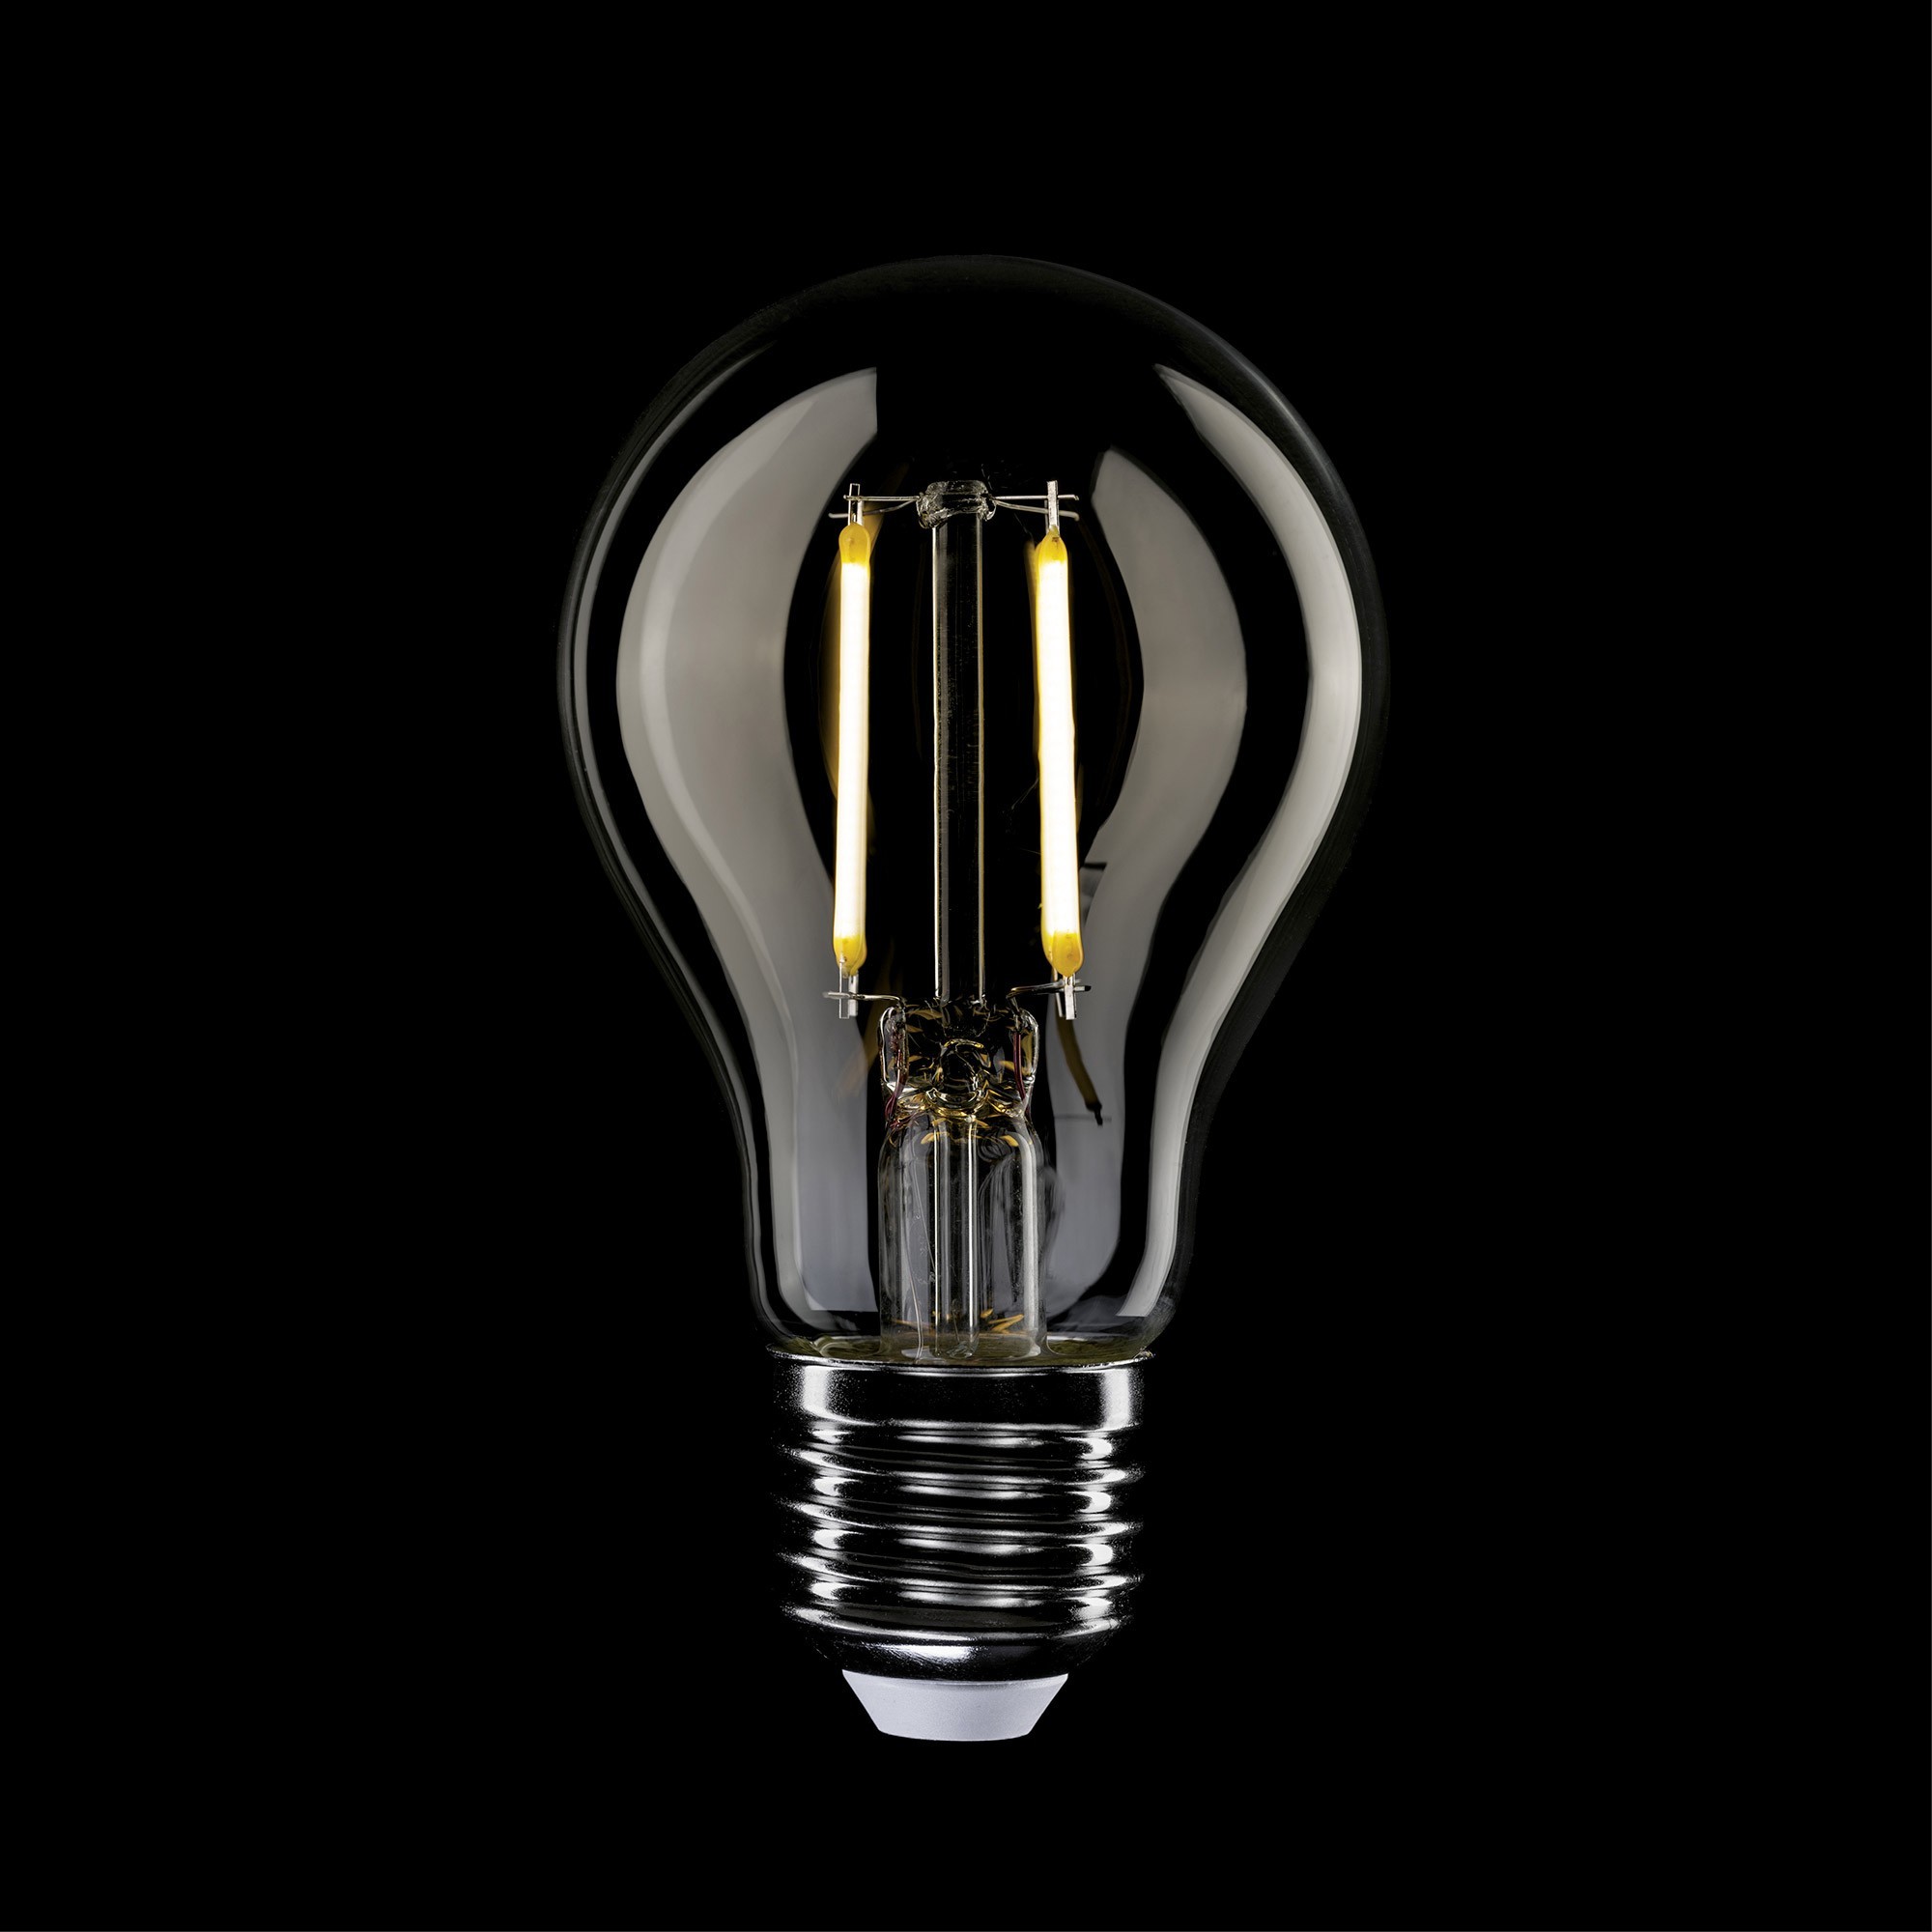 E02 - LED Light Bulb A60 E27, 4W, 2700K, 470Lm, clear glass